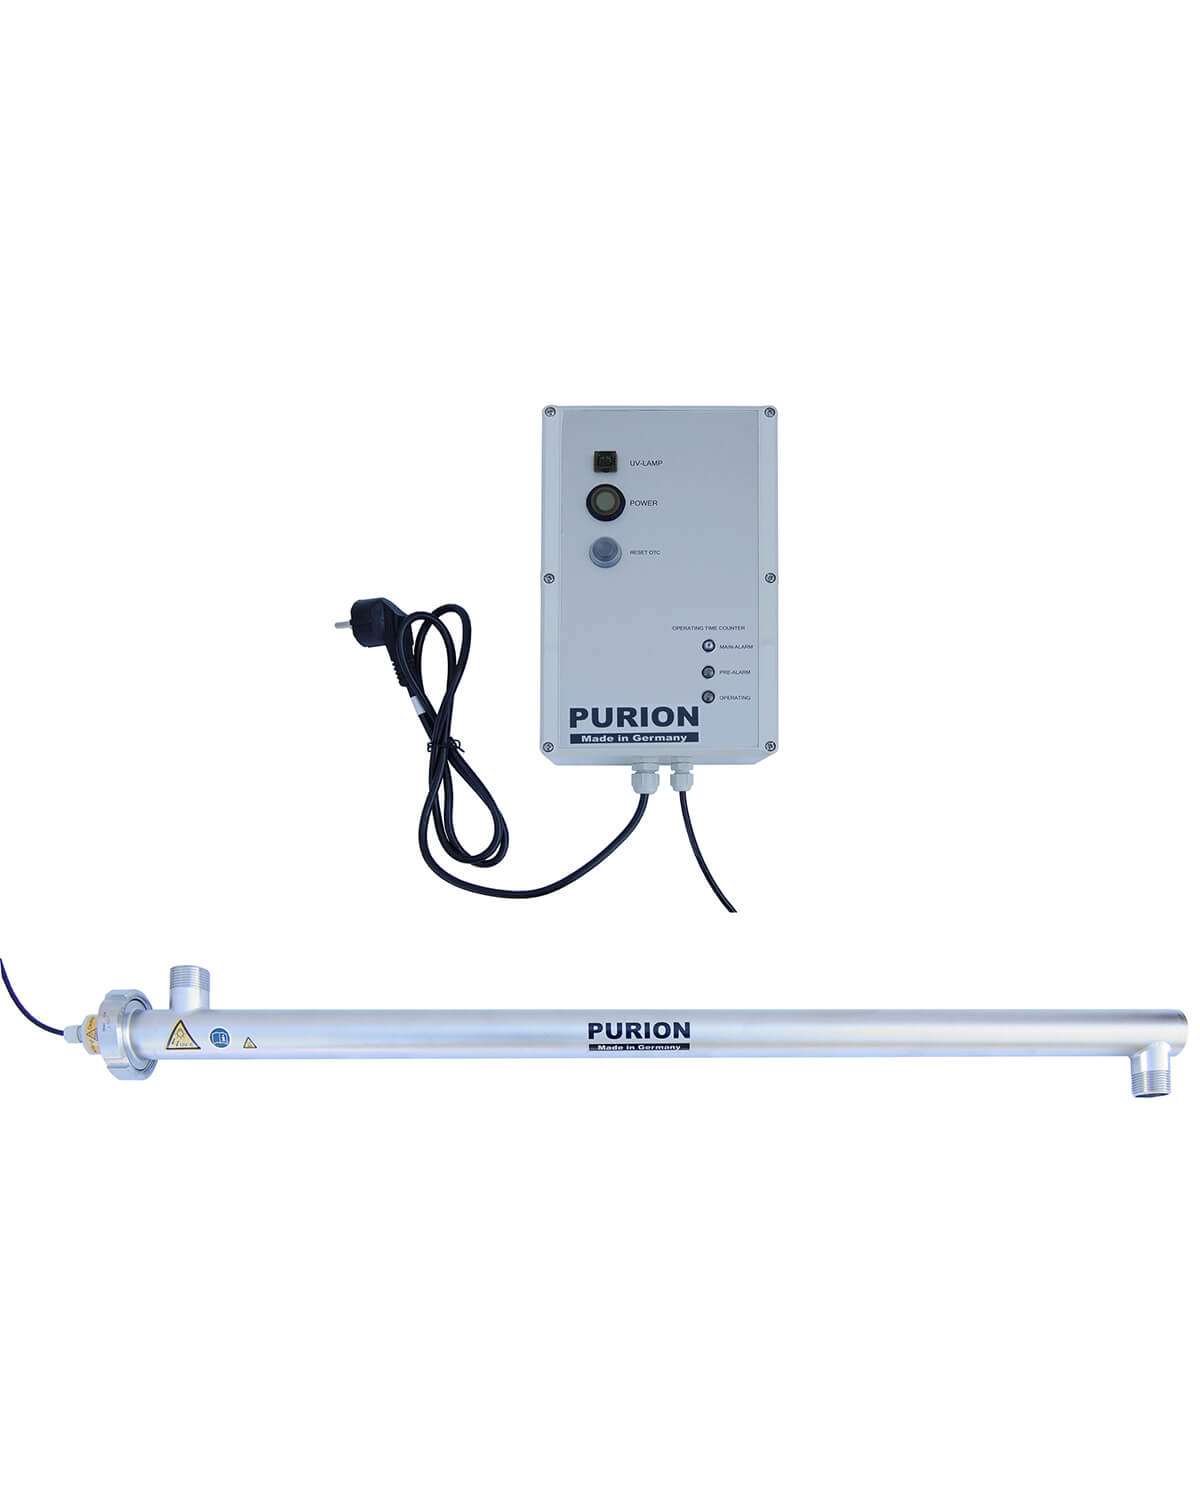 Ein kleines elektronisches Gerät mit angeschlossenem Kabel, entwickelt für die UV-C-Desinfektion in Hotels, genannt PURION 2500 90 W OTC von der PURION GmbH.